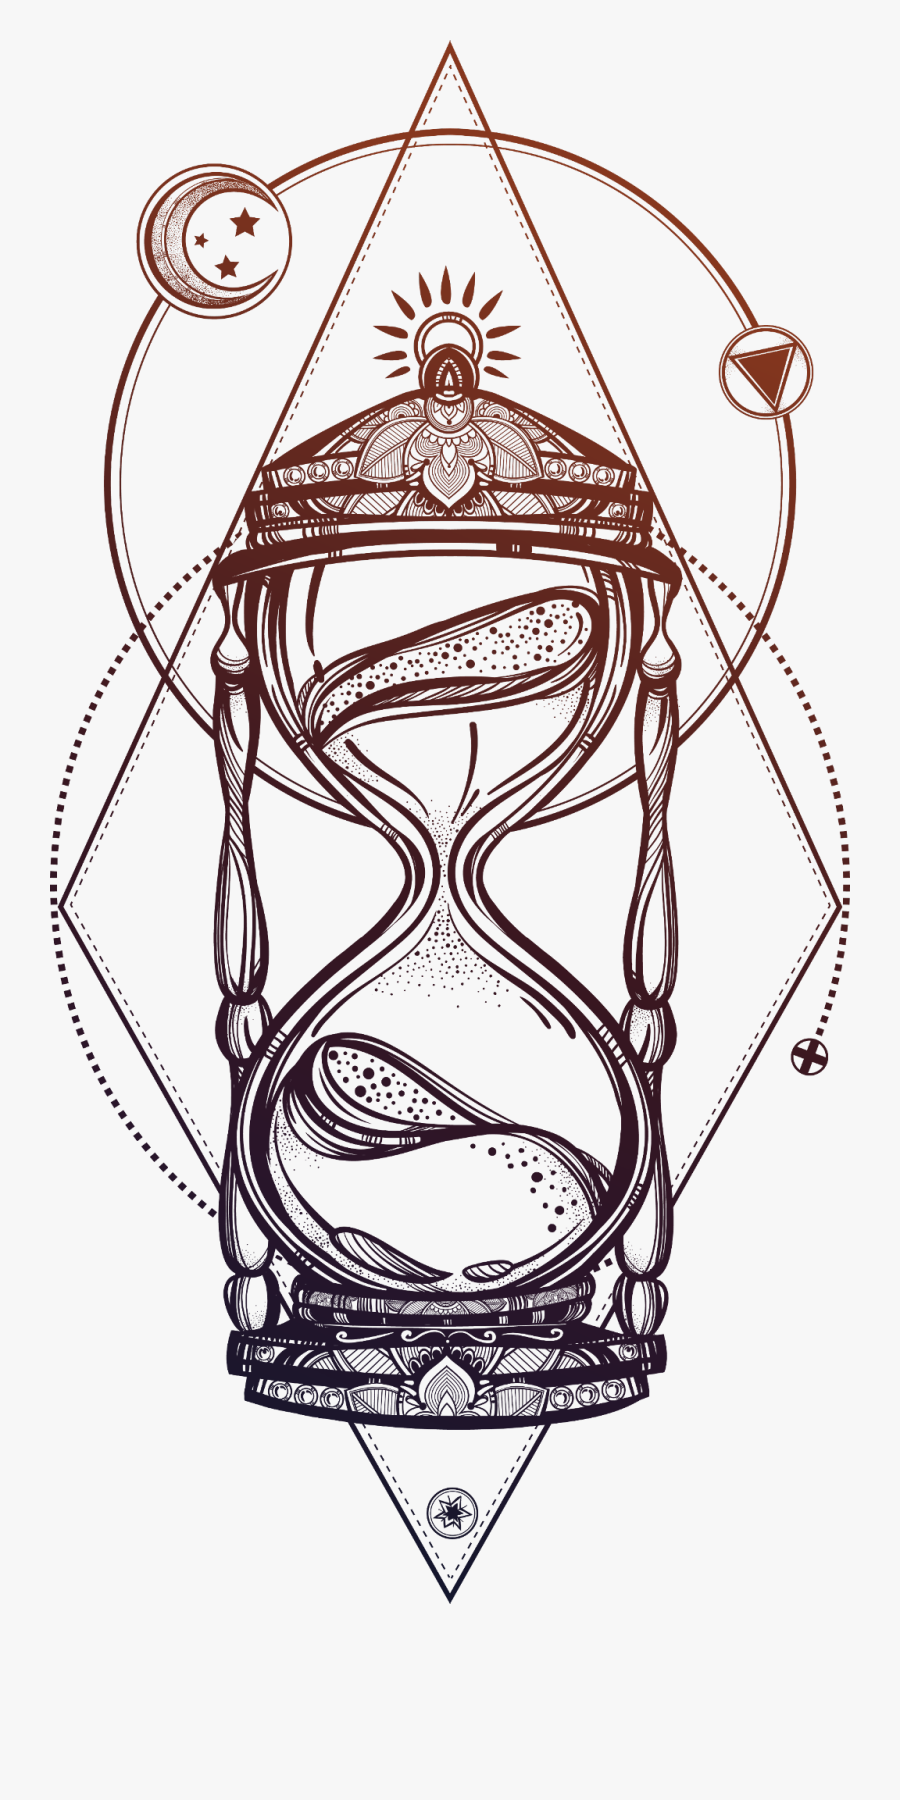 #hourglass - Reloj De Arena Dibujo, Transparent Clipart